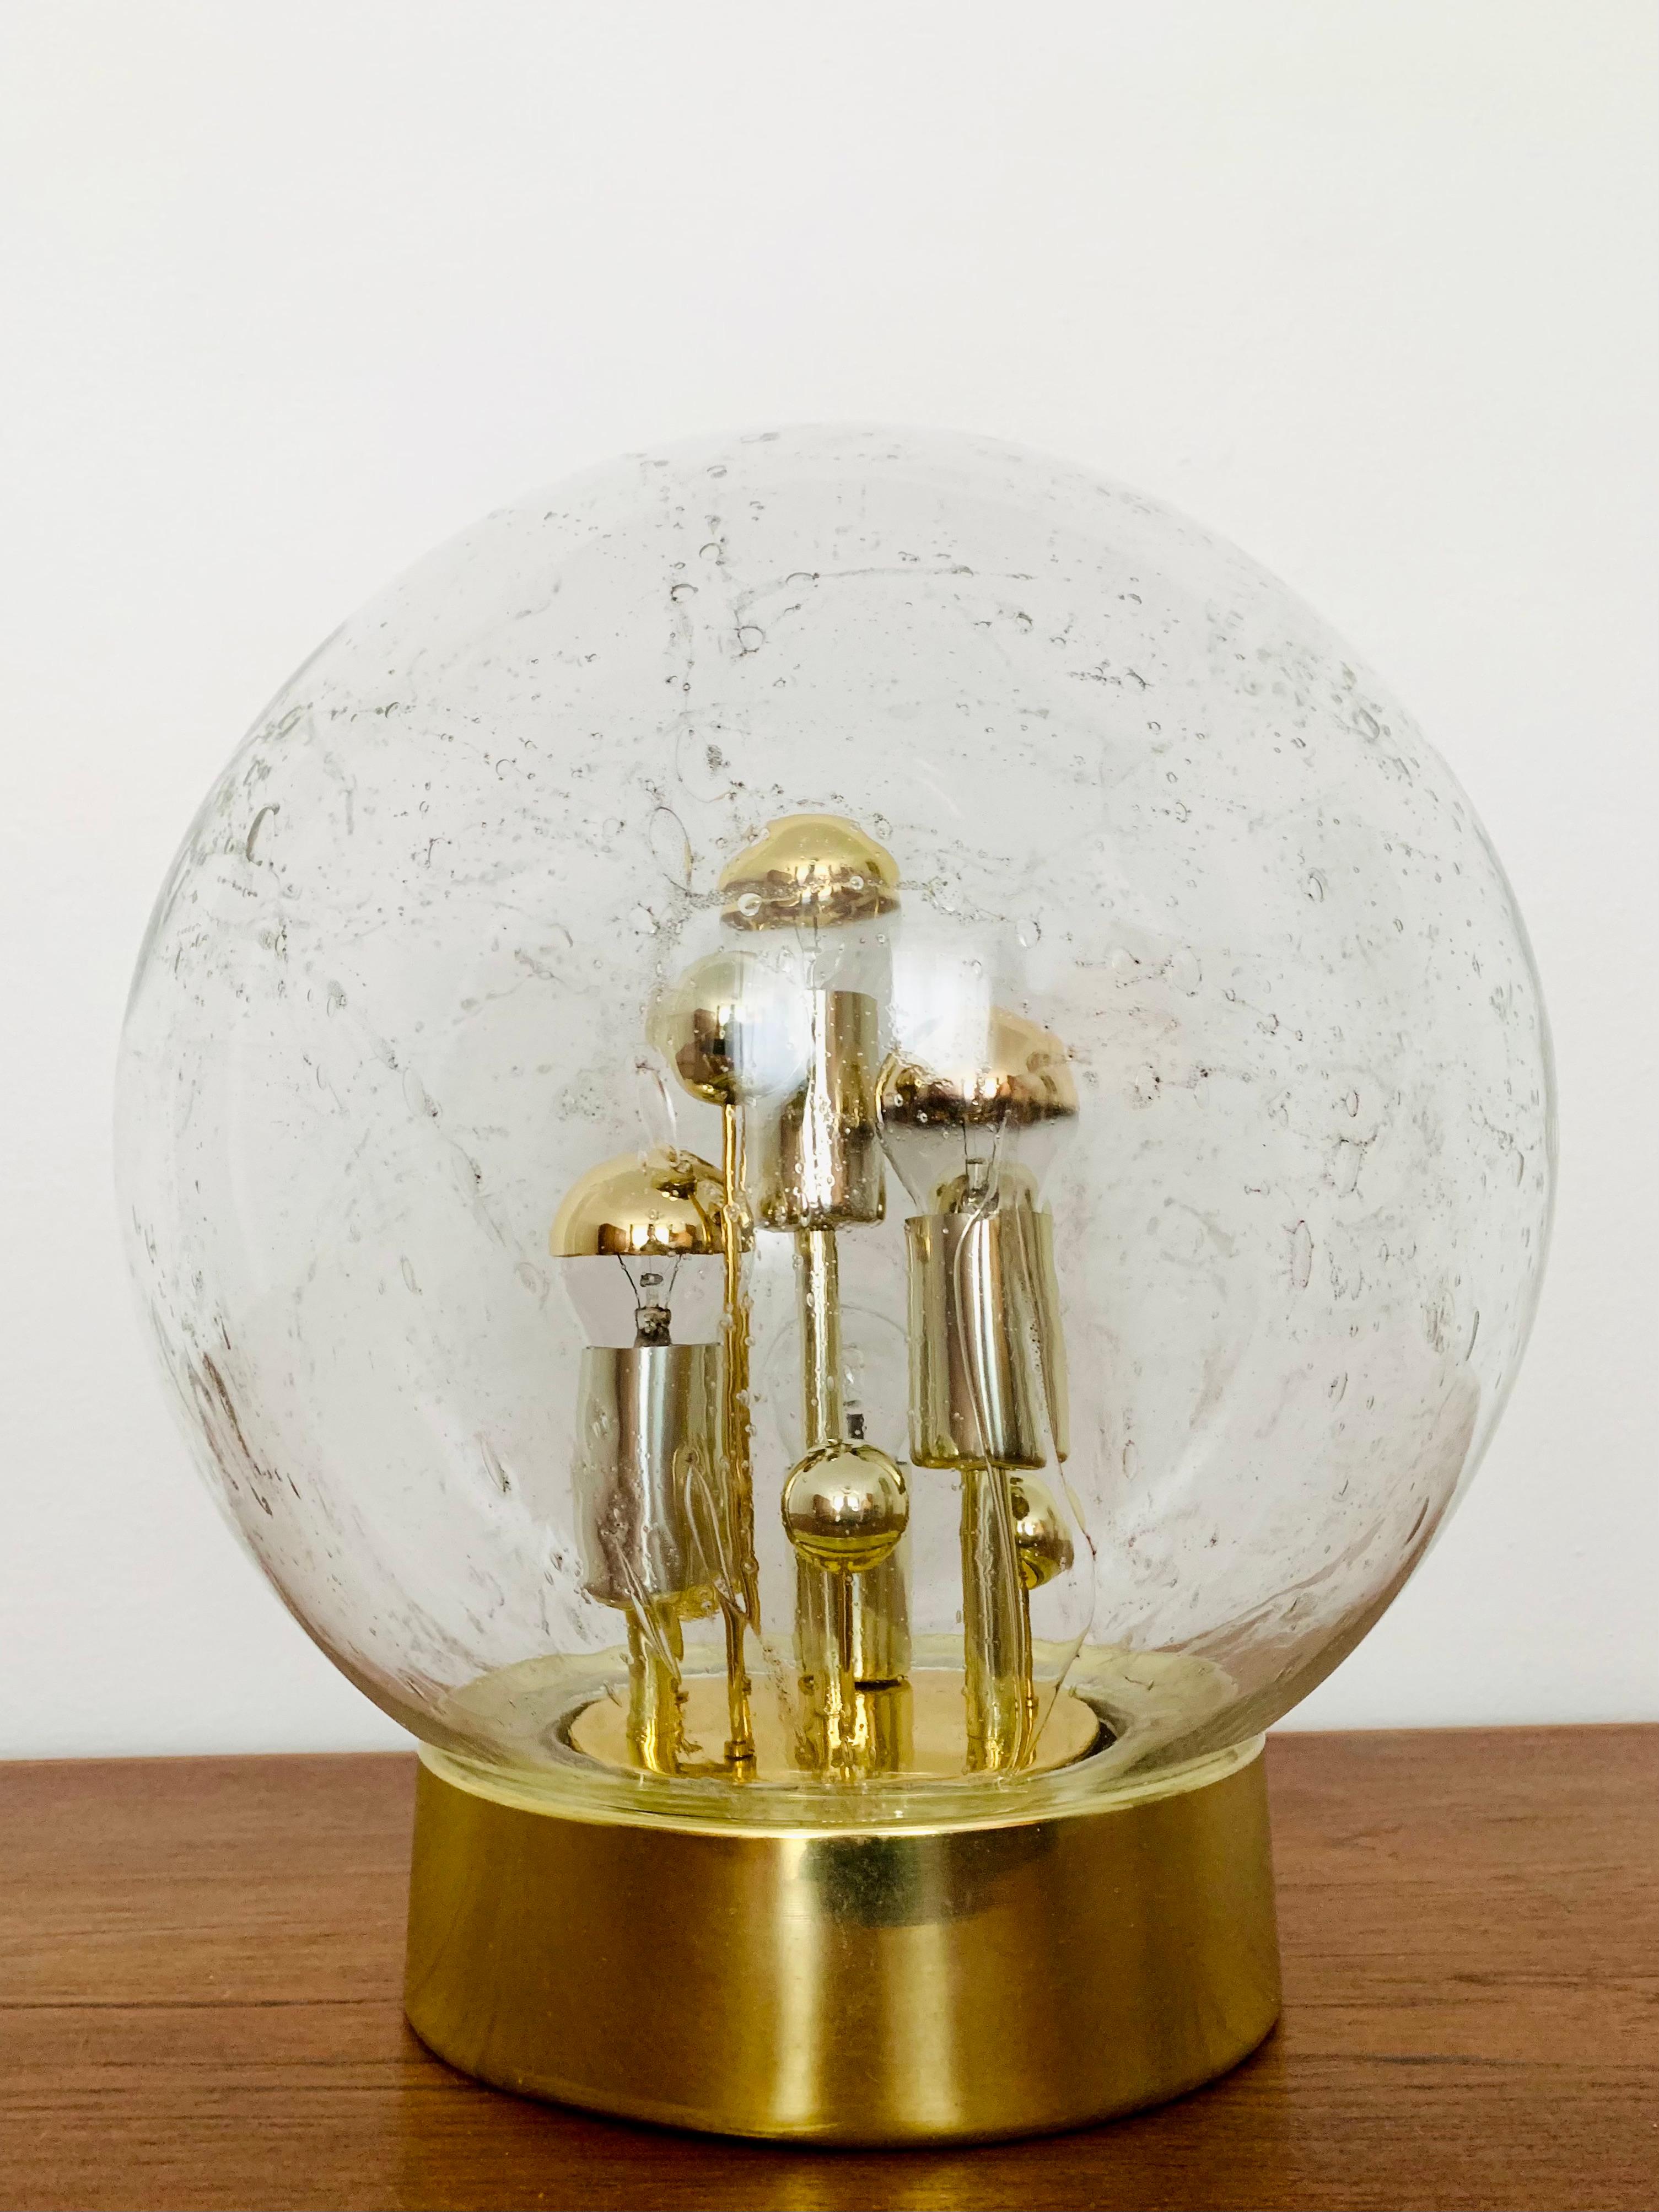 Sehr schöne und große goldene Big Ball Tischlampe von Doria aus den 1960er Jahren.
Sehr elegantes Hollywood Regency Design mit einem fantastisch glamourösen Look.
Die Struktur im Glas erzeugt ein spektakuläres, funkelndes Licht.

Hersteller: